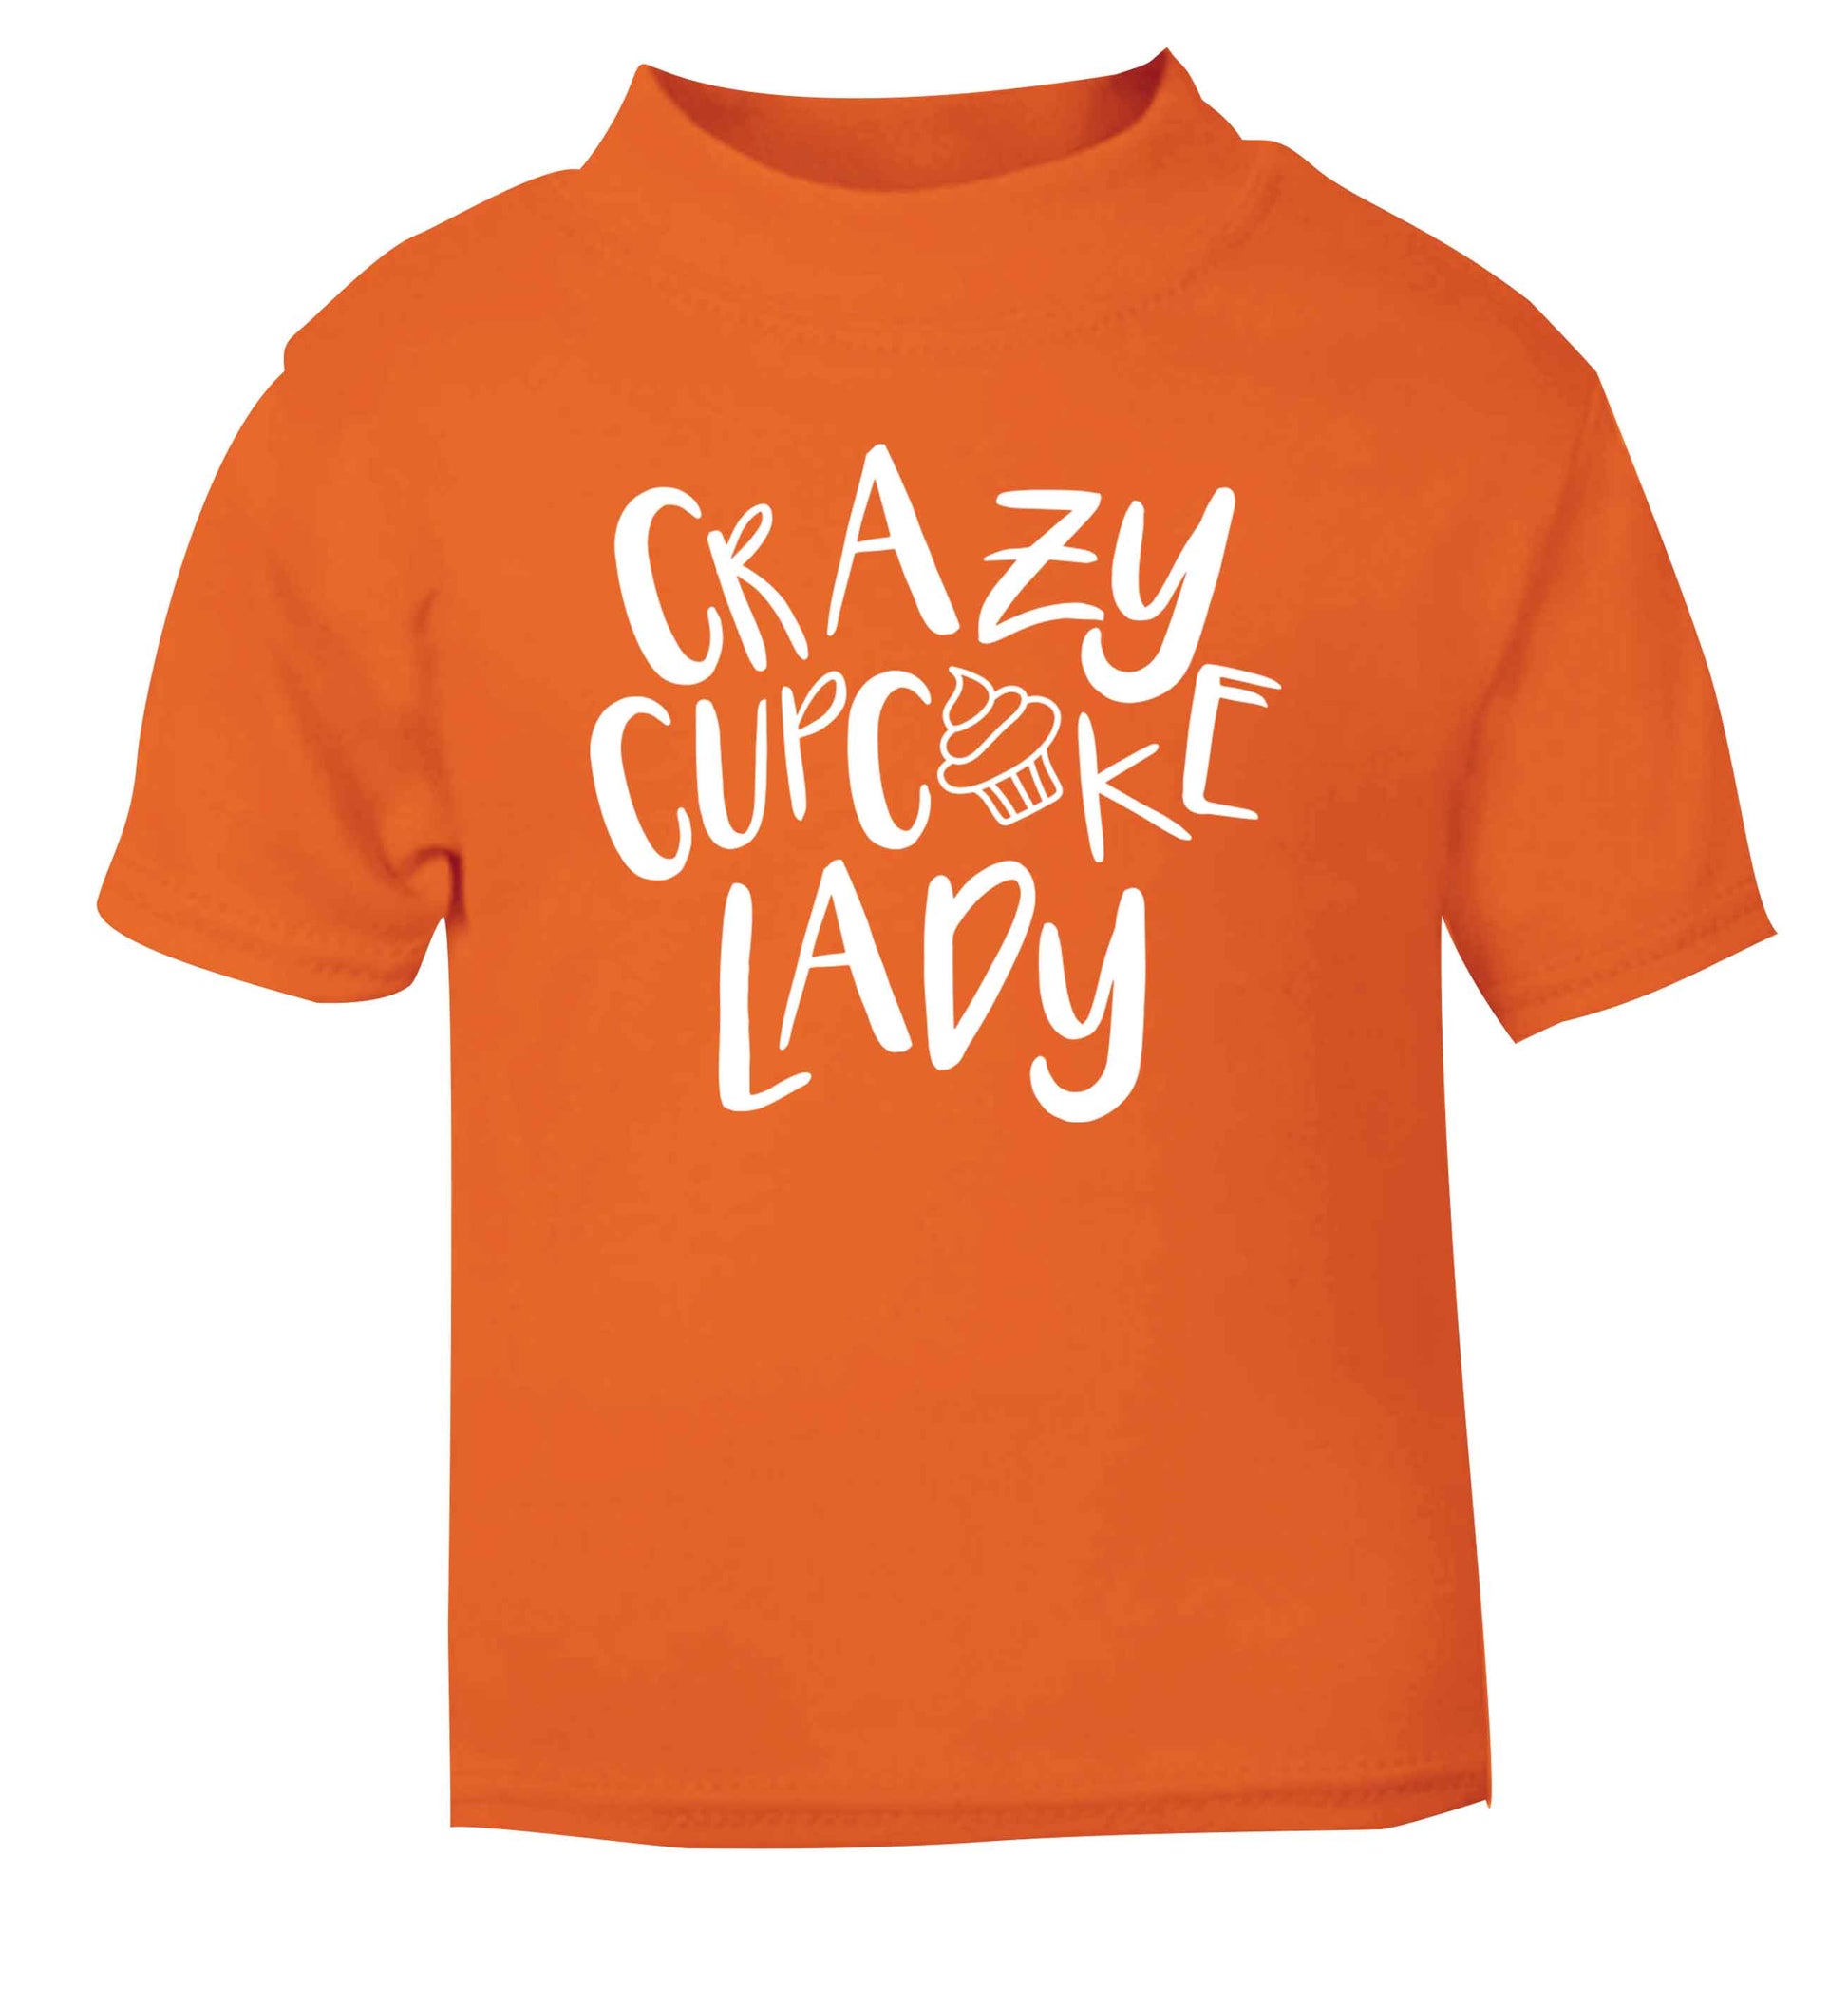 Crazy cupcake lady orange Baby Toddler Tshirt 2 Years